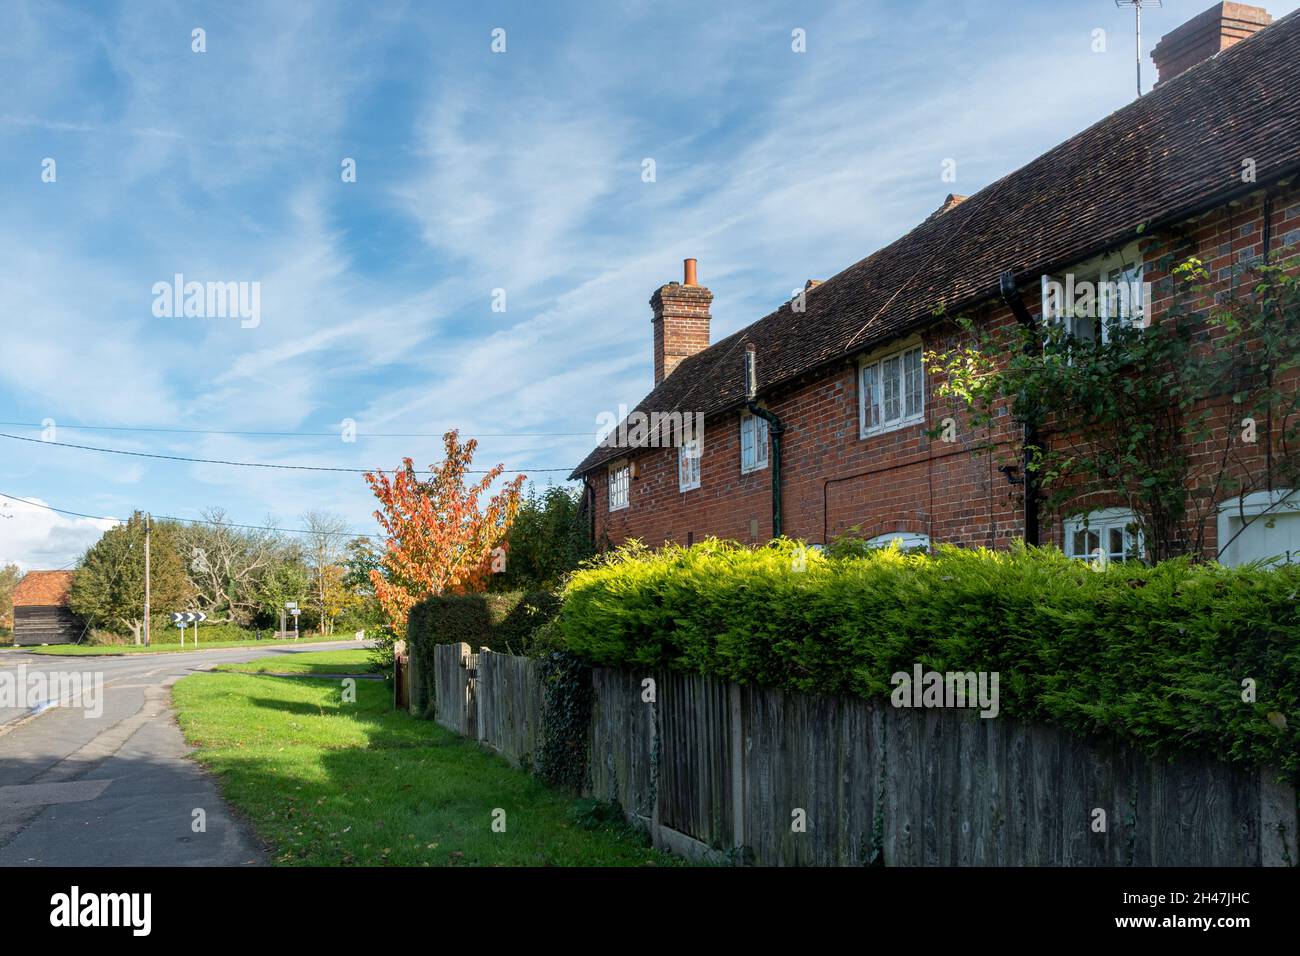 Reihenhäuser Immobilien auf der Straße in Bramley Dorf, Hampshire, England, Großbritannien Stockfoto